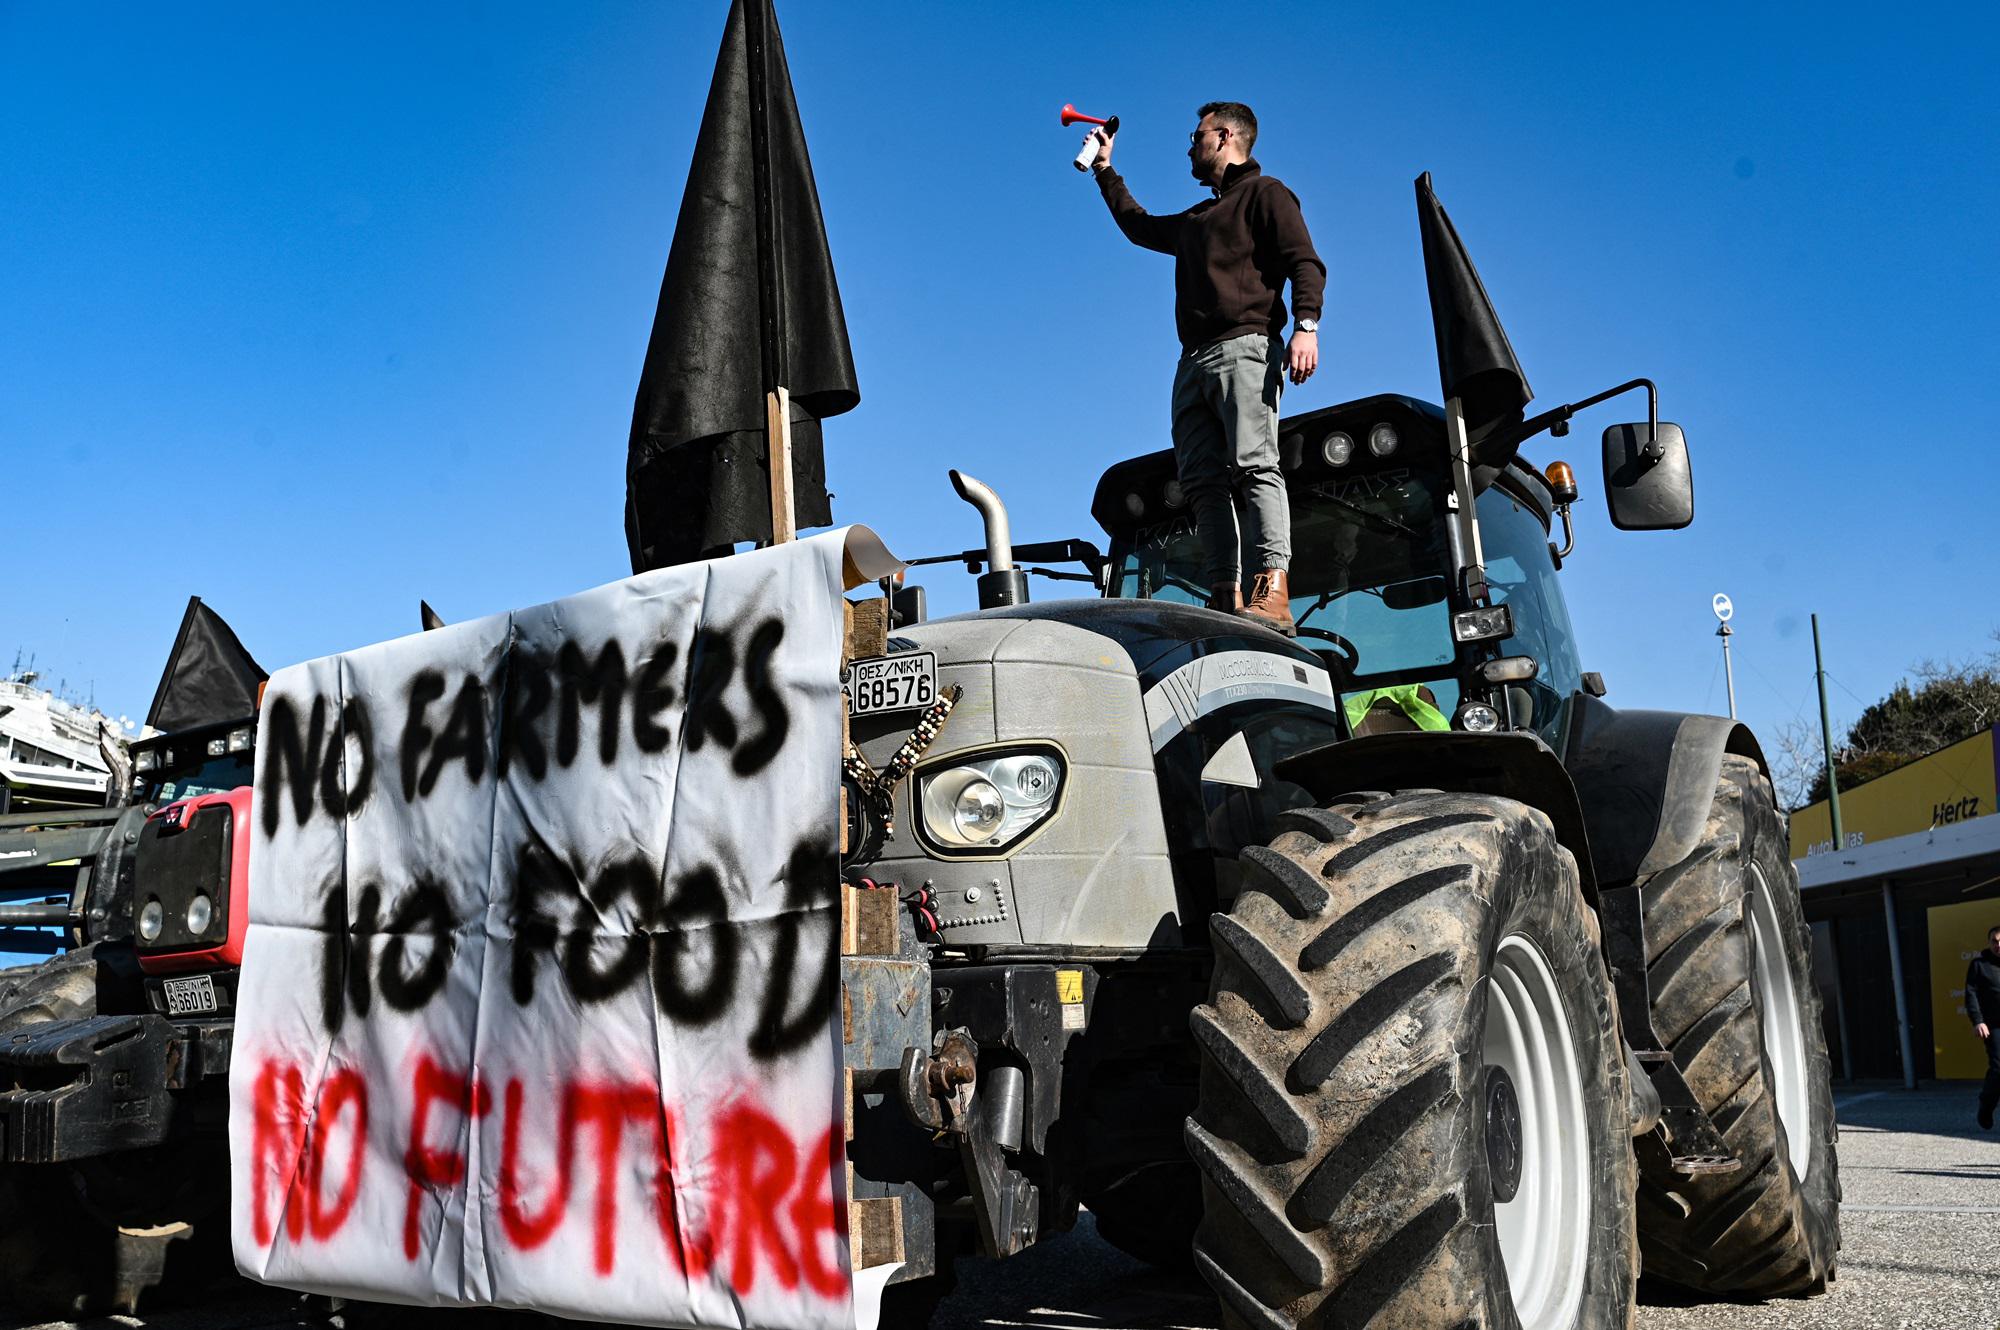 La protesta dei trattori assedia l'Europa, agricoltori bloccano i valichi di frontiera tra Olanda e Belgio